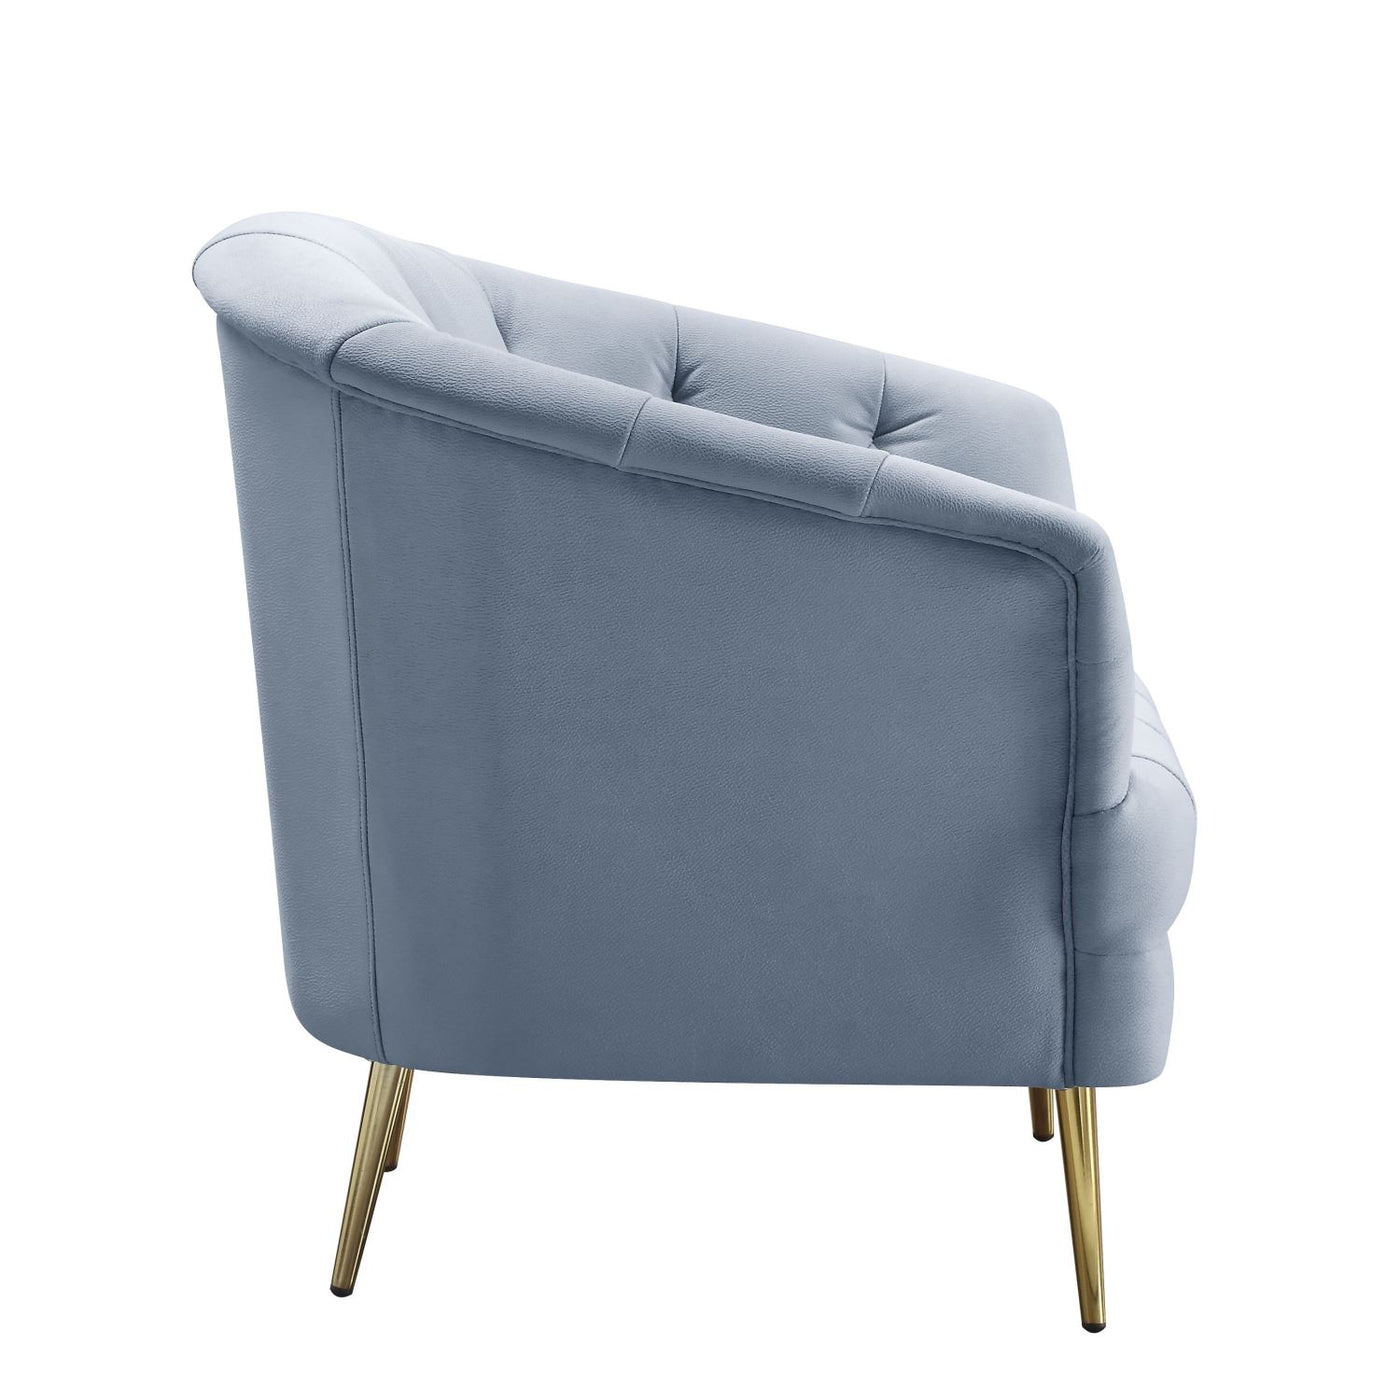 Dalvic Velvet Arm Chair - Light Grey